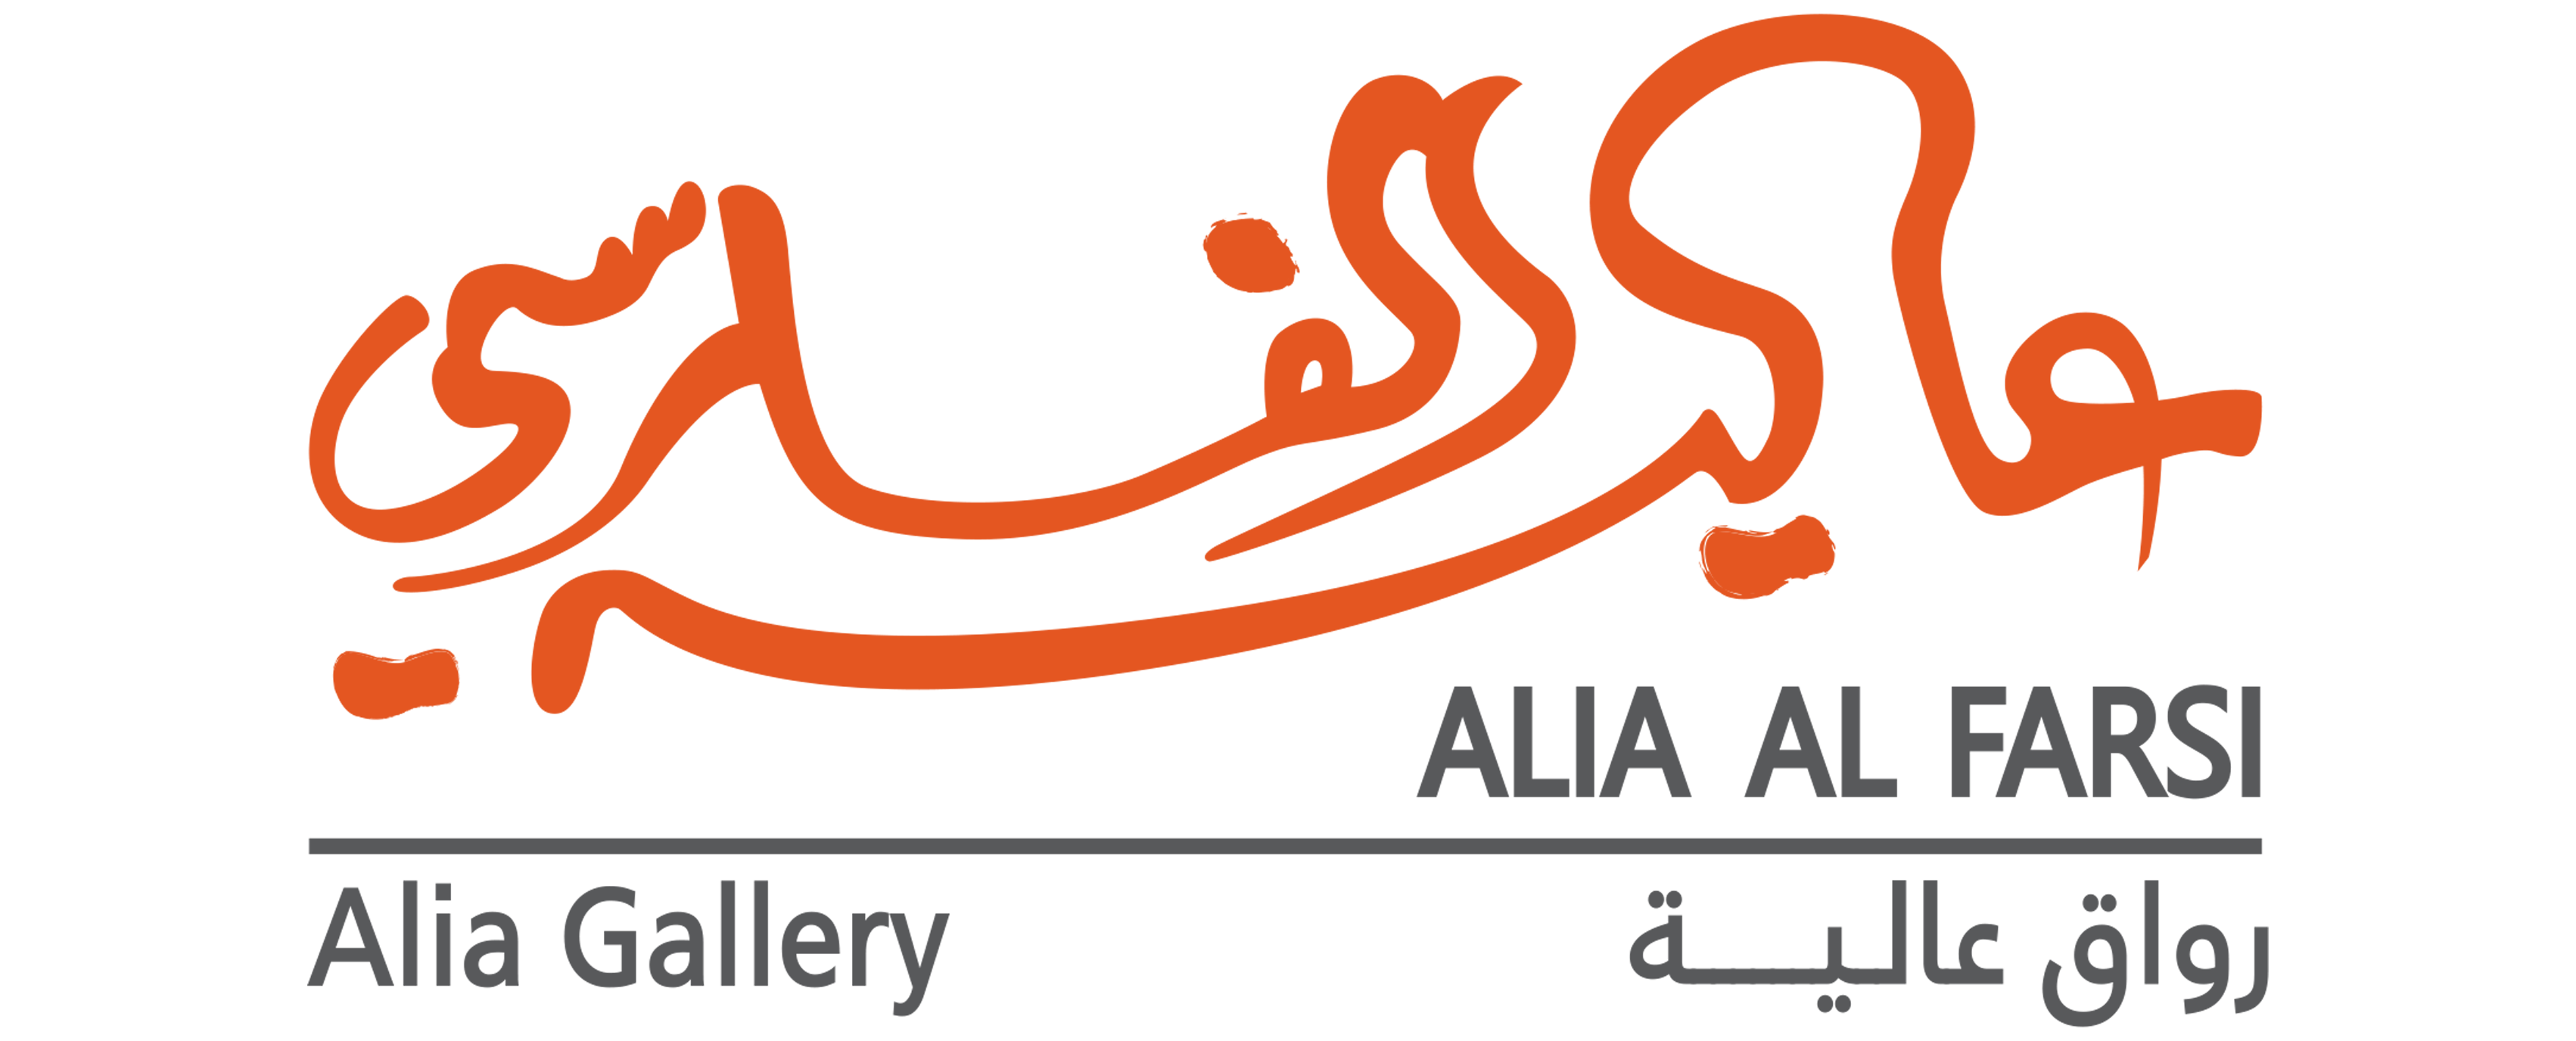 Alia Al Farsi